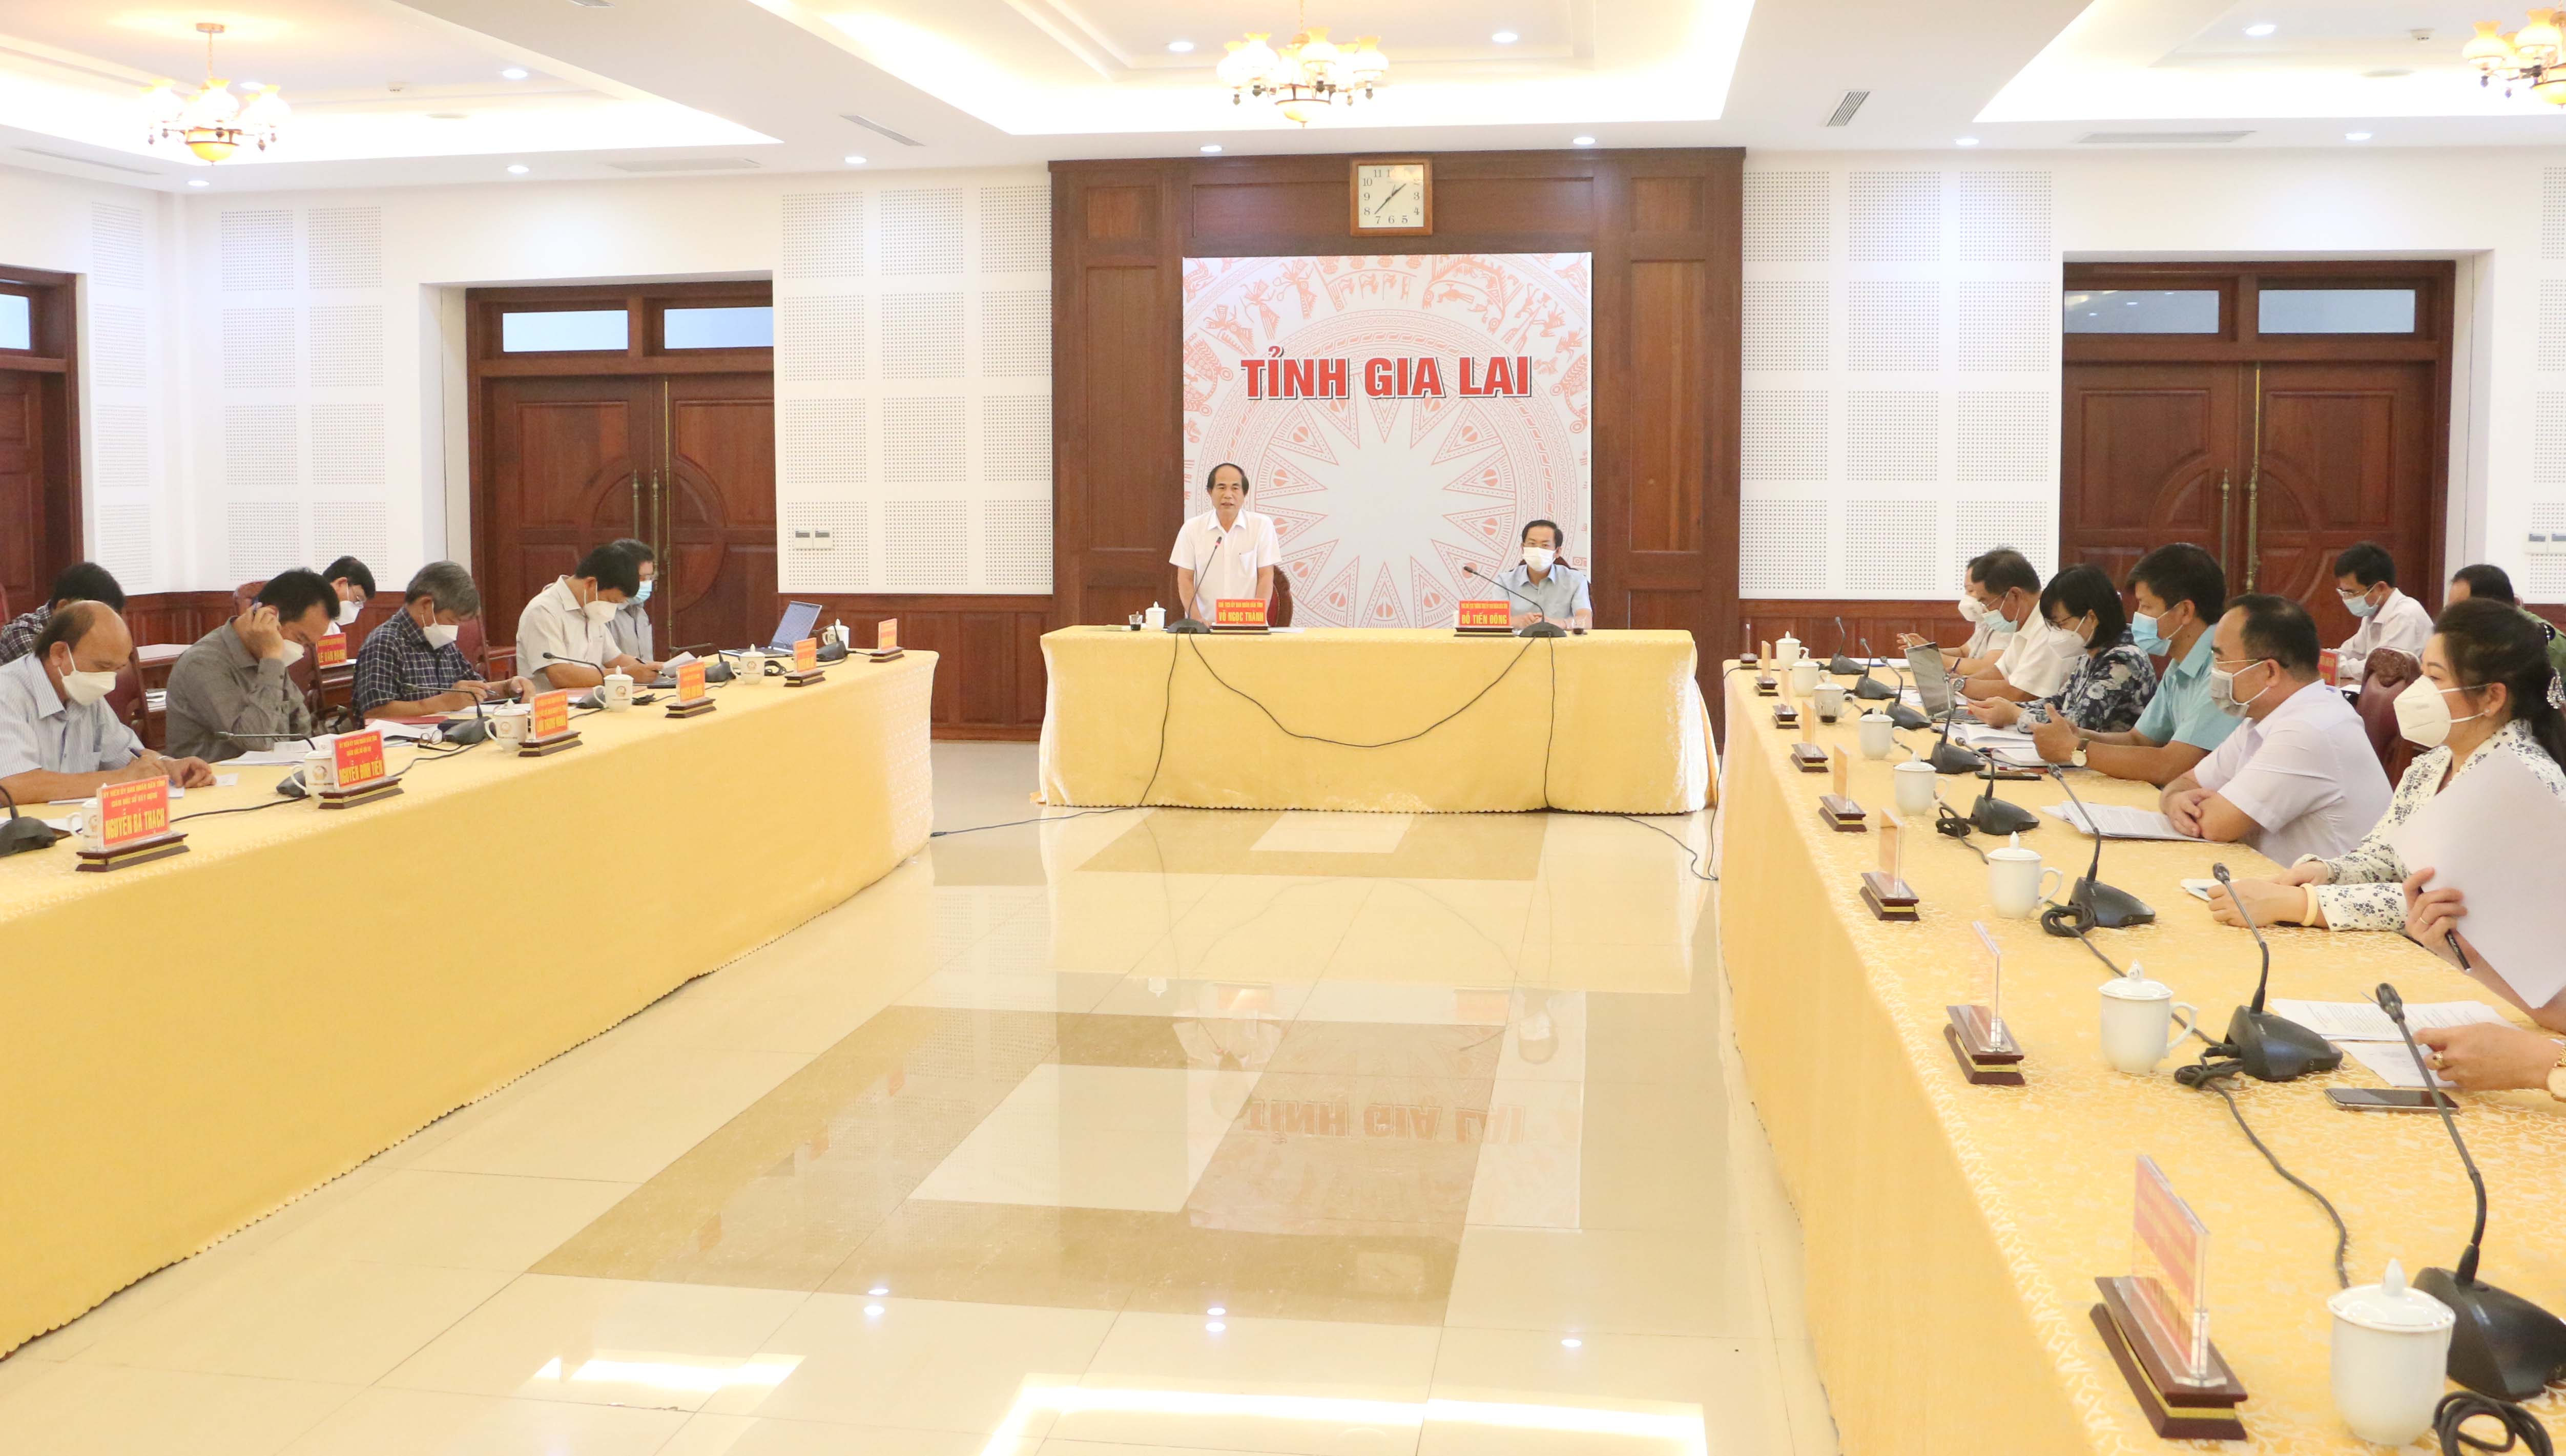 Chủ tịch UBND tỉnh Võ Ngọc Thành: Cần nghiêm túc kiểm điểm, chấn chỉnh trong thực hiện nhiệm vụ